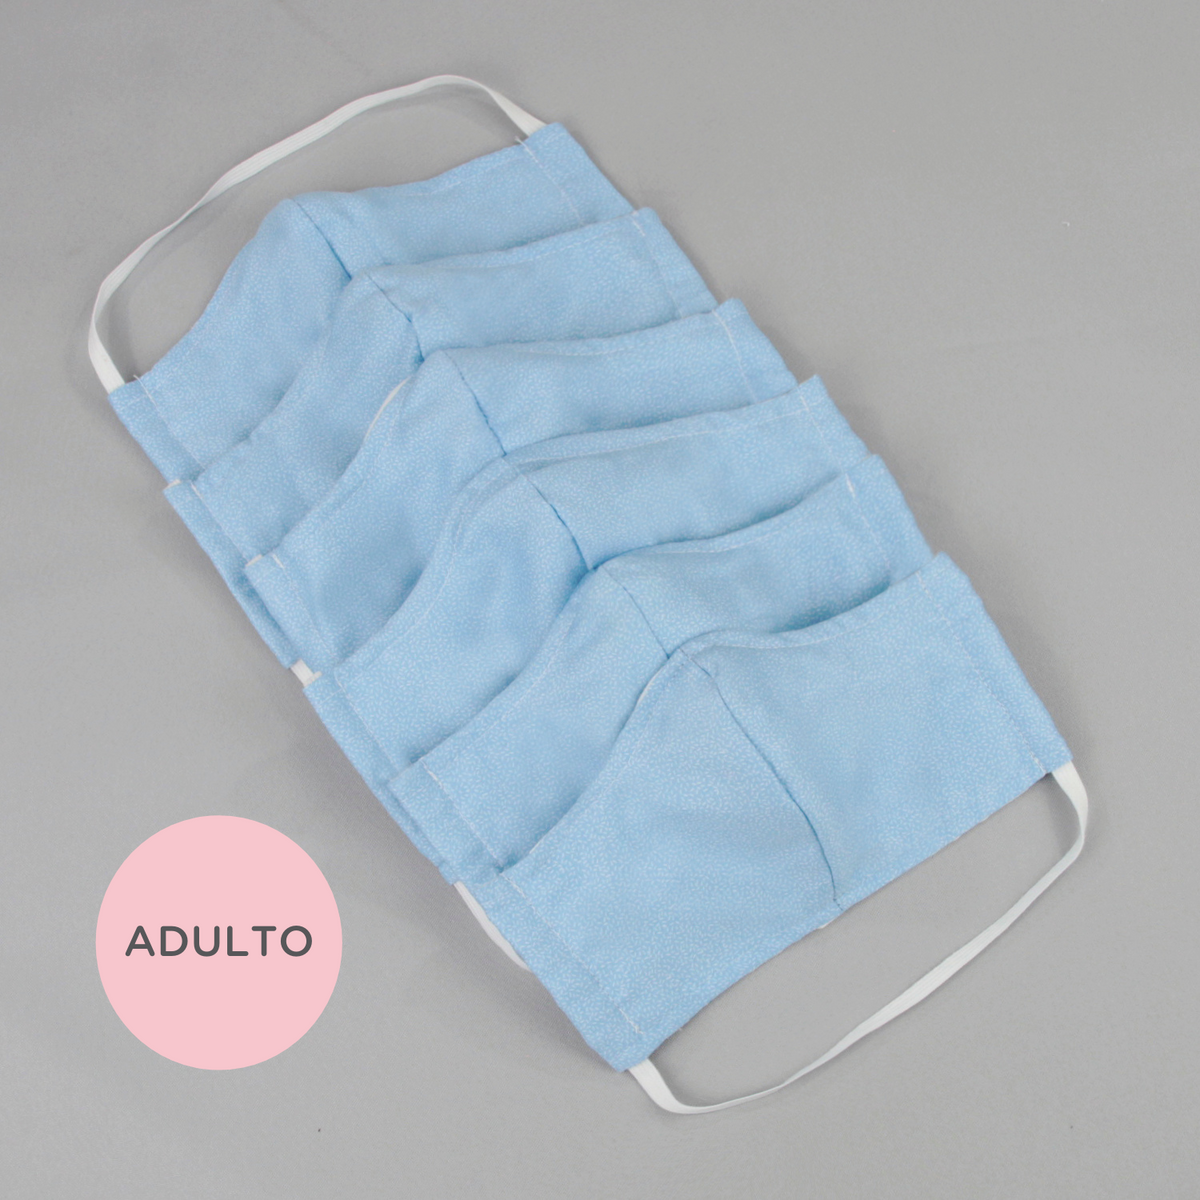 Cubrebocas con bolsillo para filtro para ADULTO - Azul (10, 30 o 50 piezas)